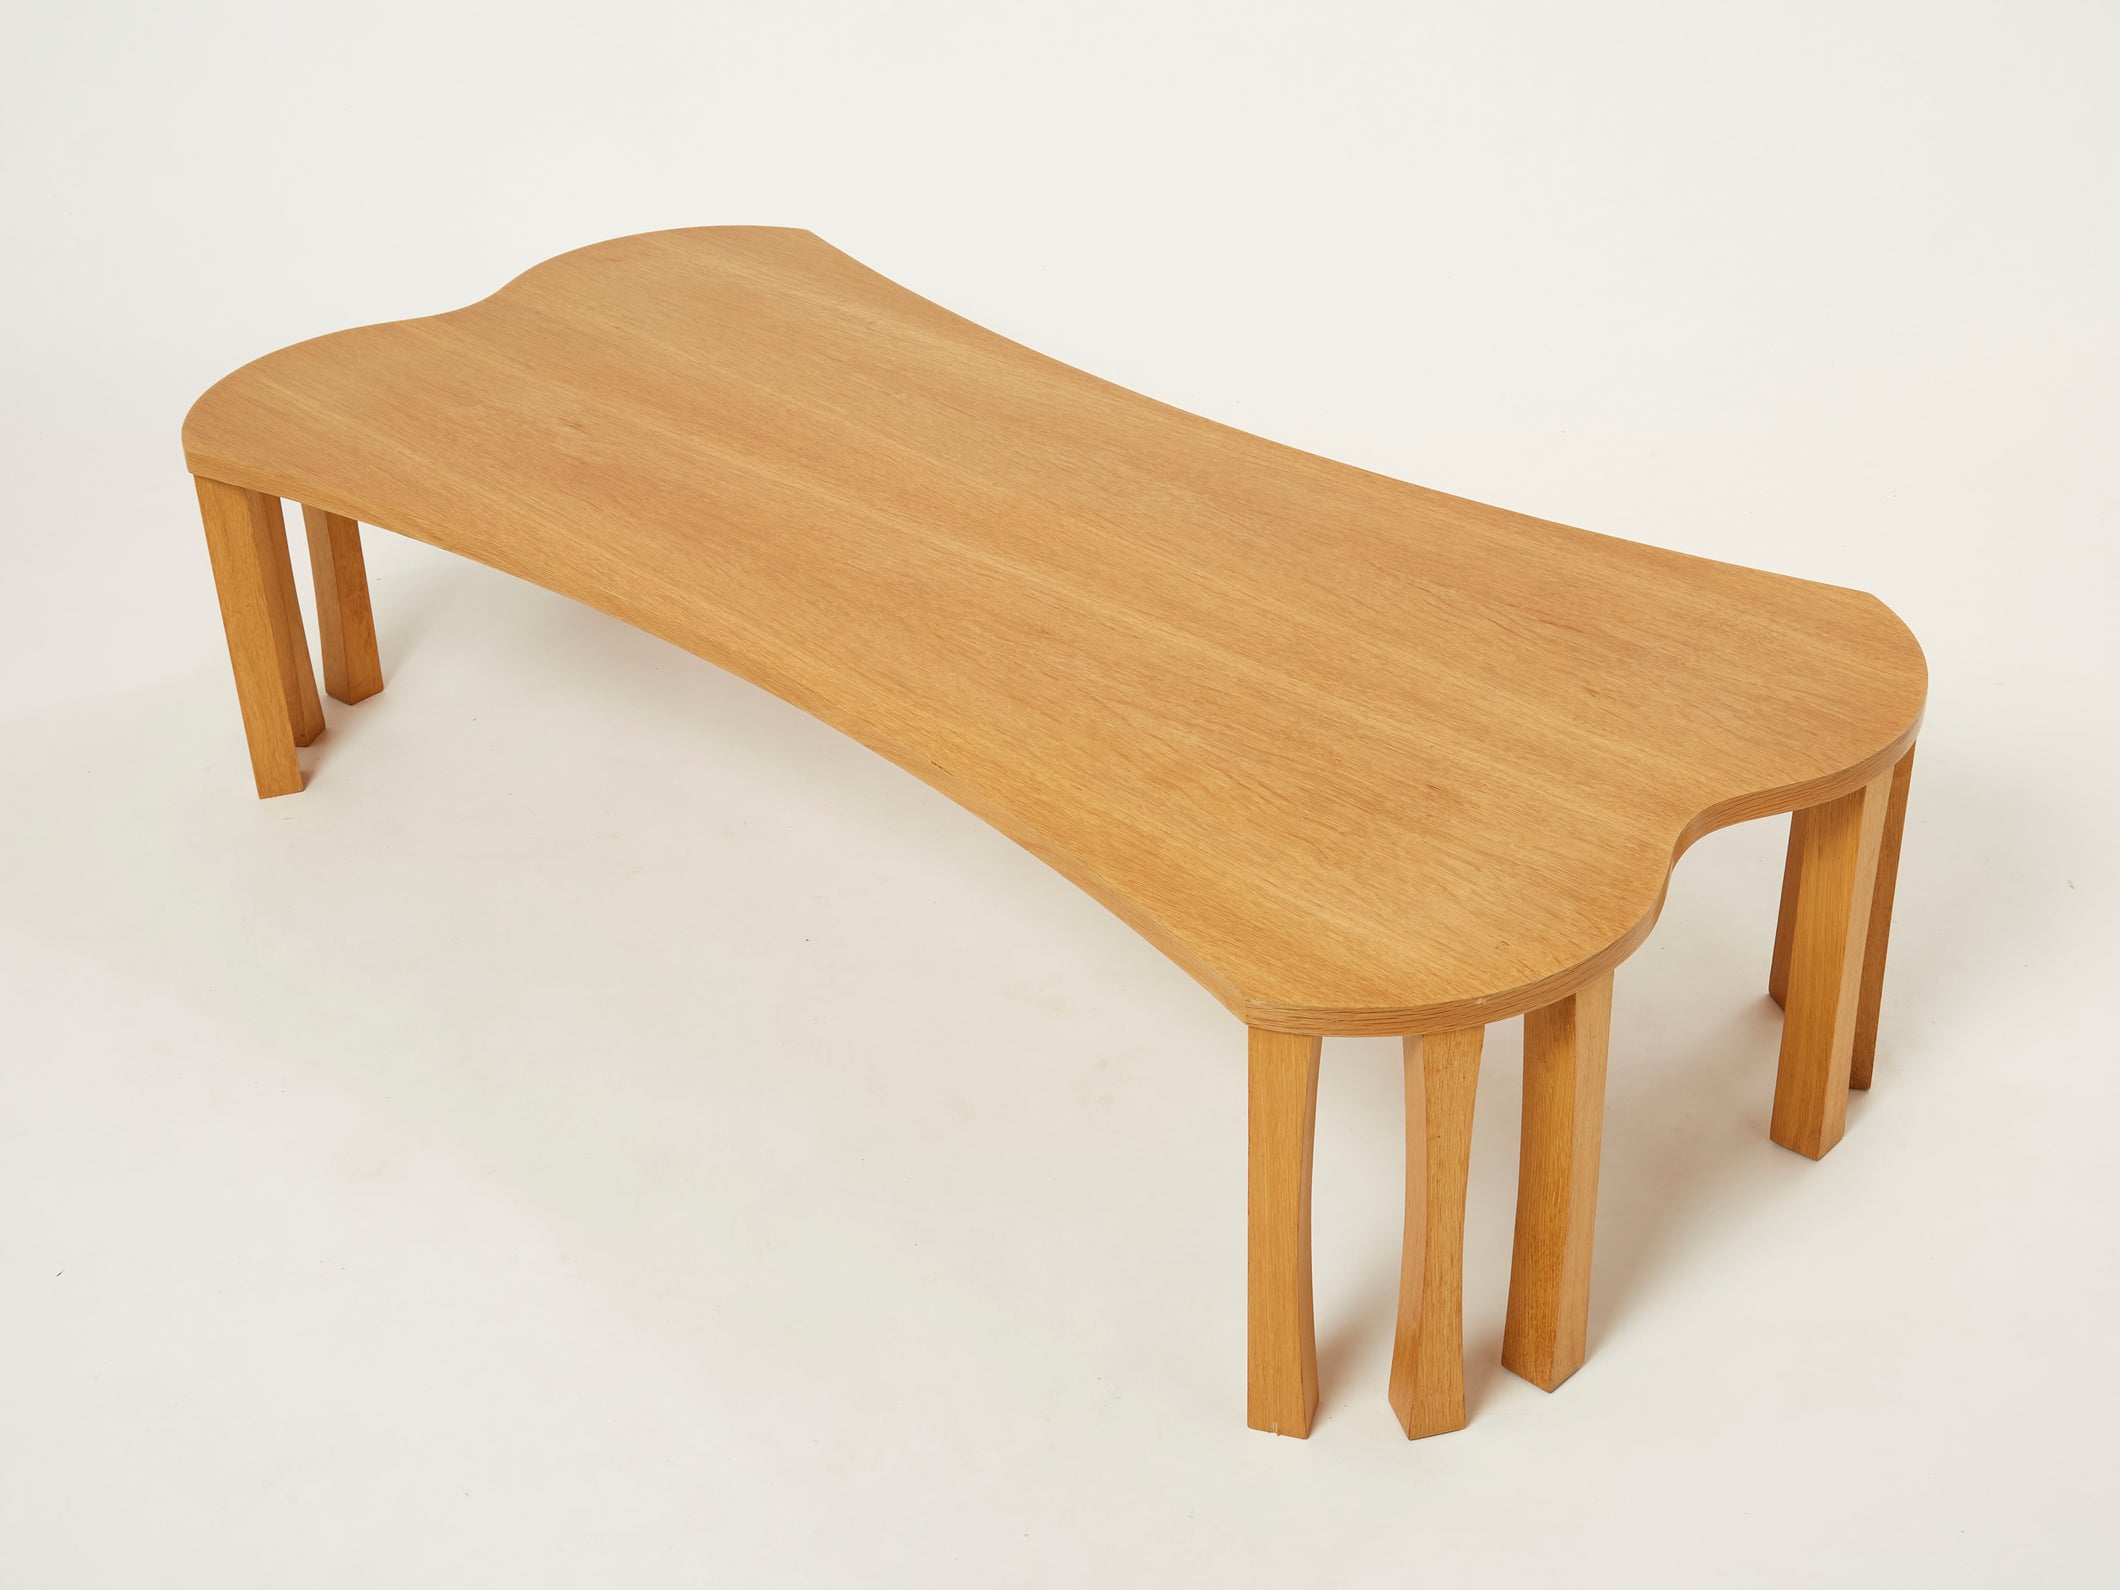 Unique Vincent Poujardieu free form oak wood coffee table 1992